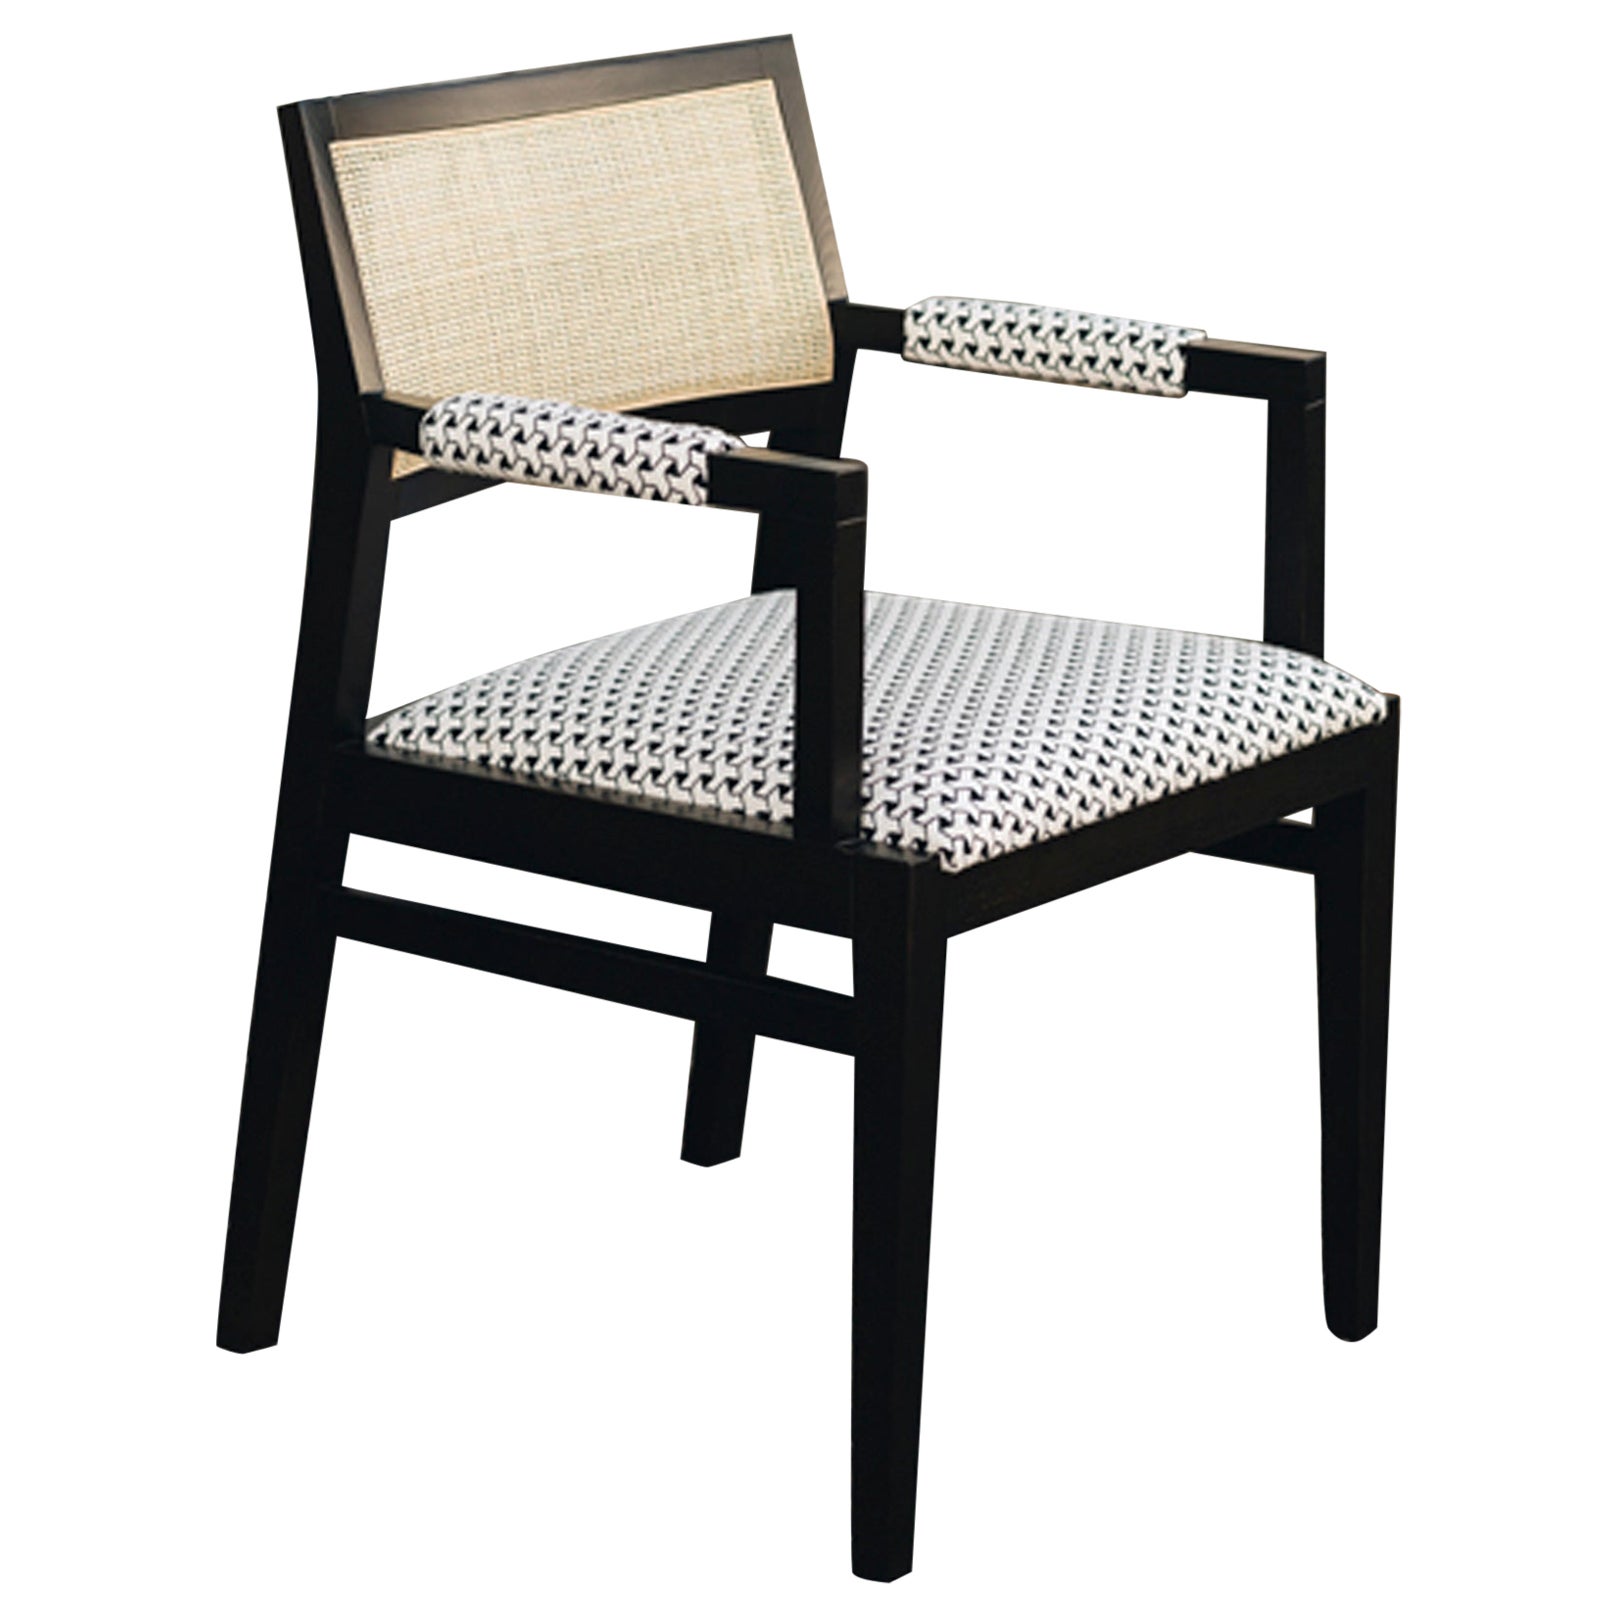 Duistt Basic 1.1 Chair by Duistt